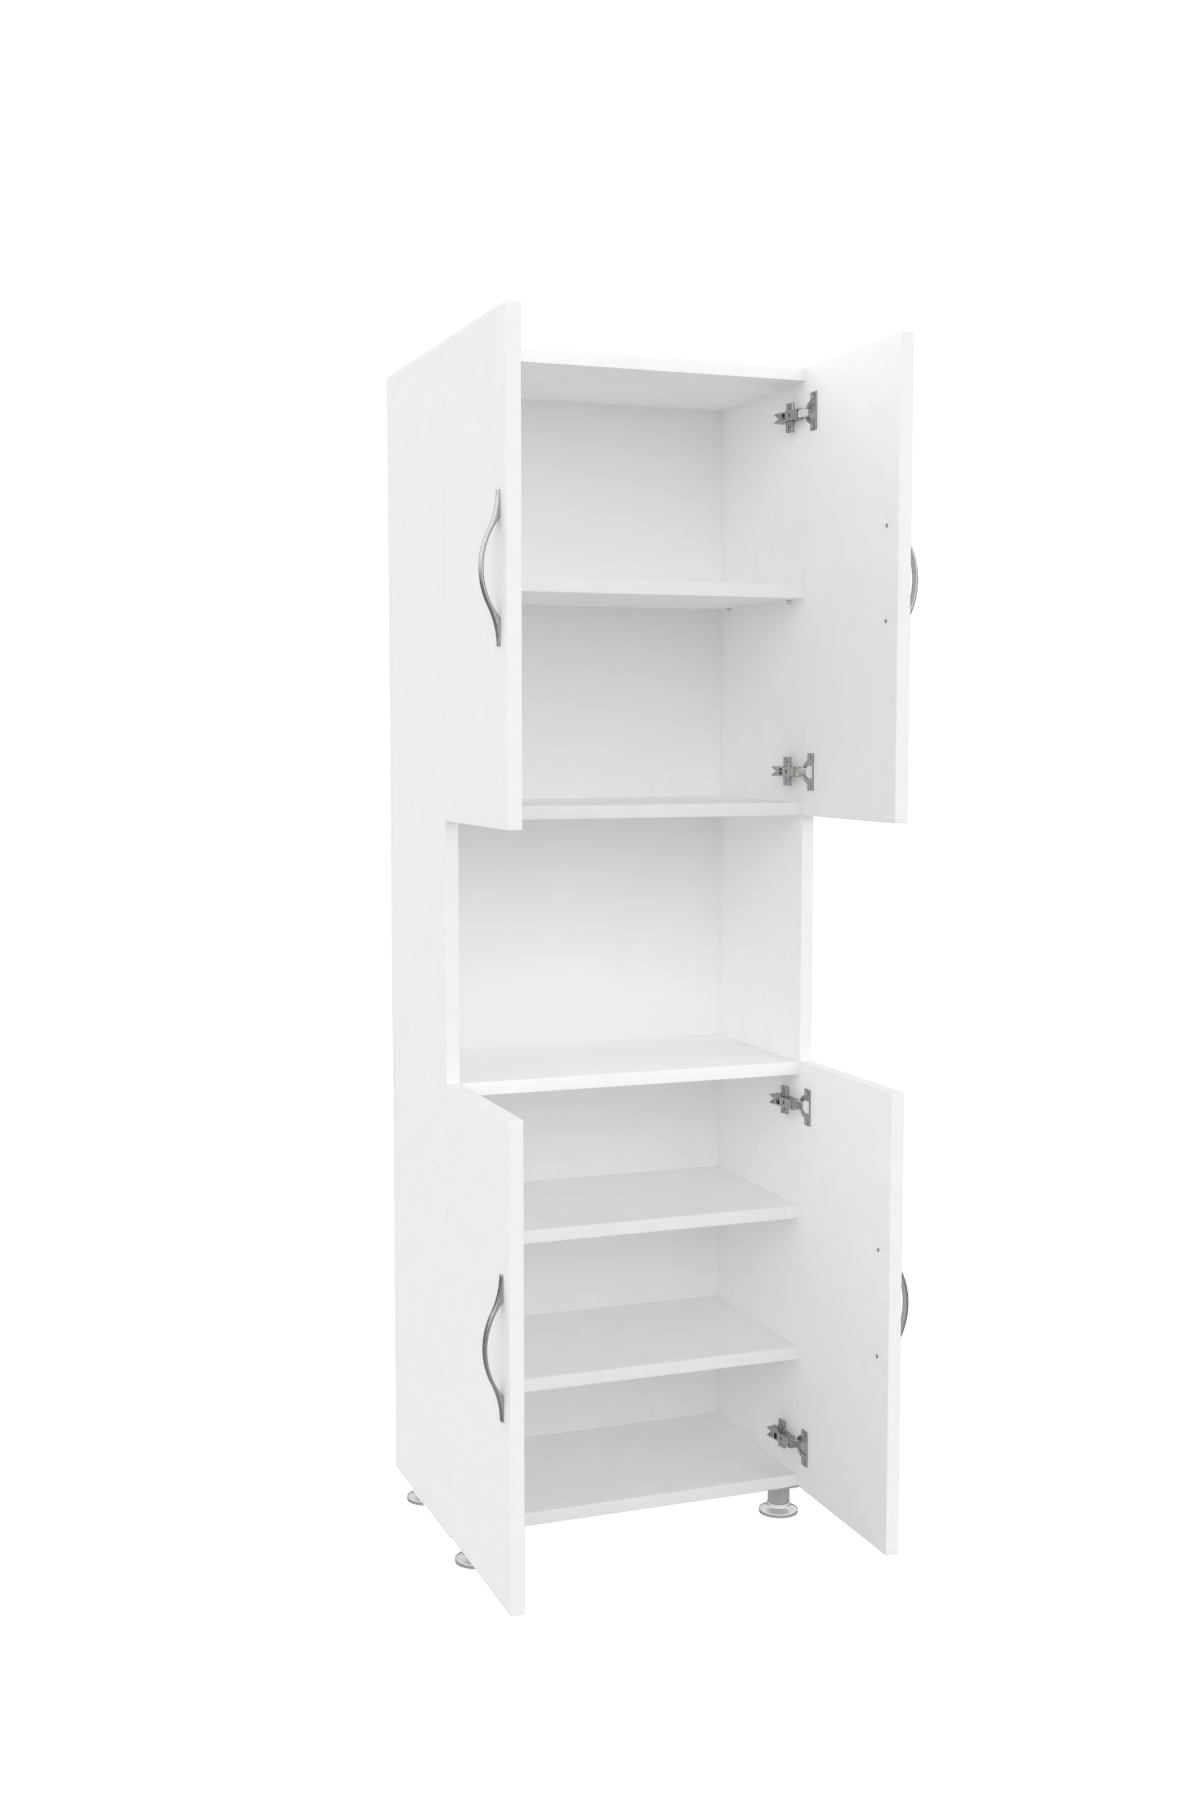 Mimilos D8 Multi Purpose Cabinet